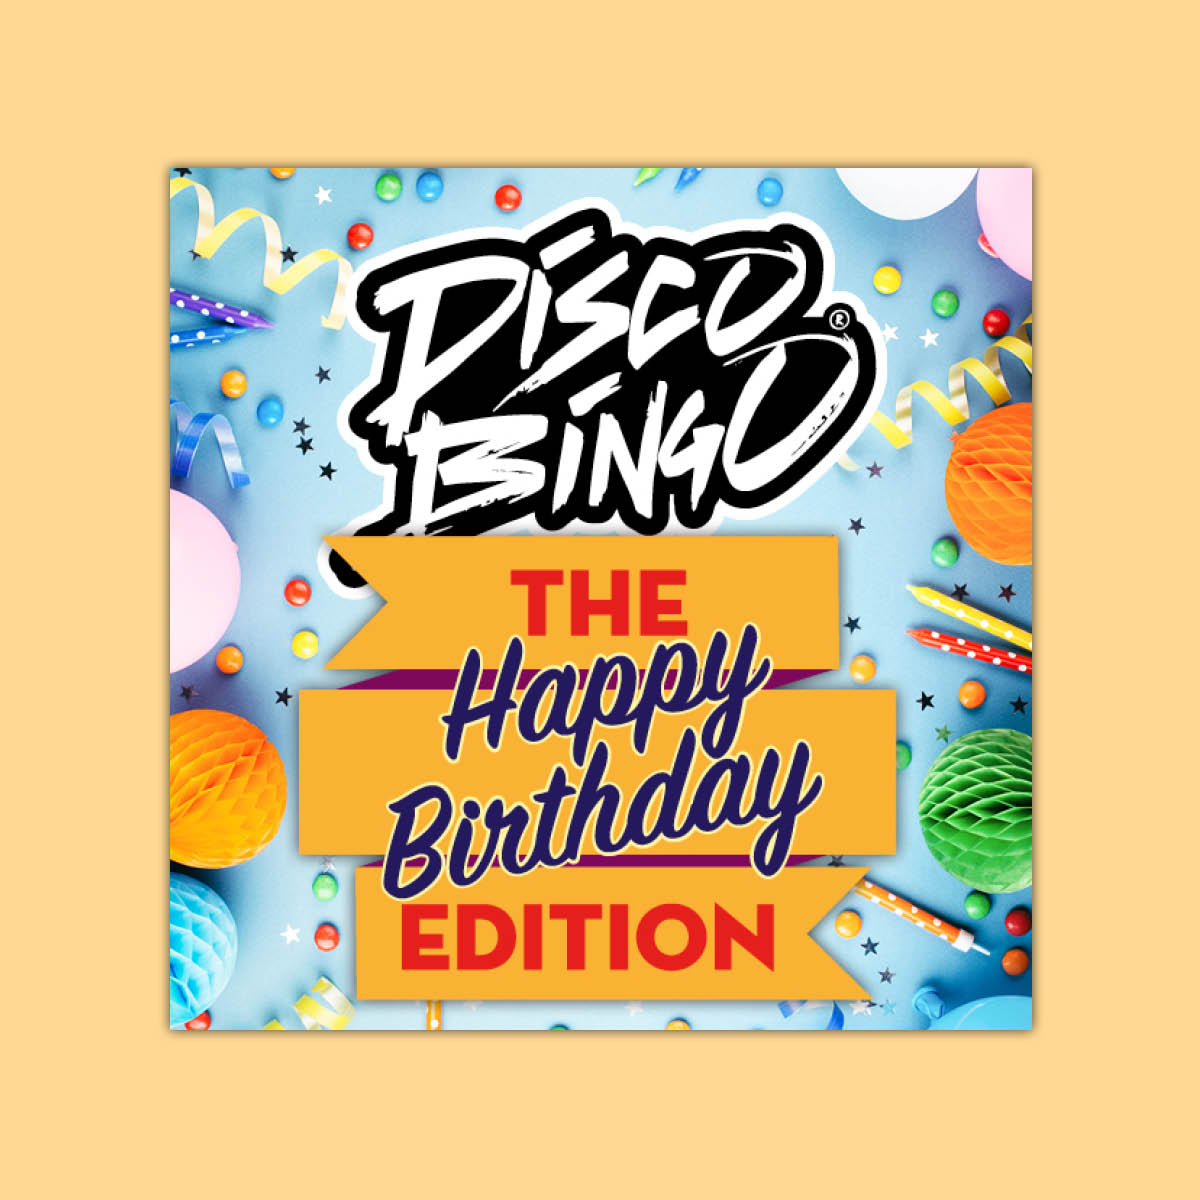 Disco Bingo The Happy Birthday Edition